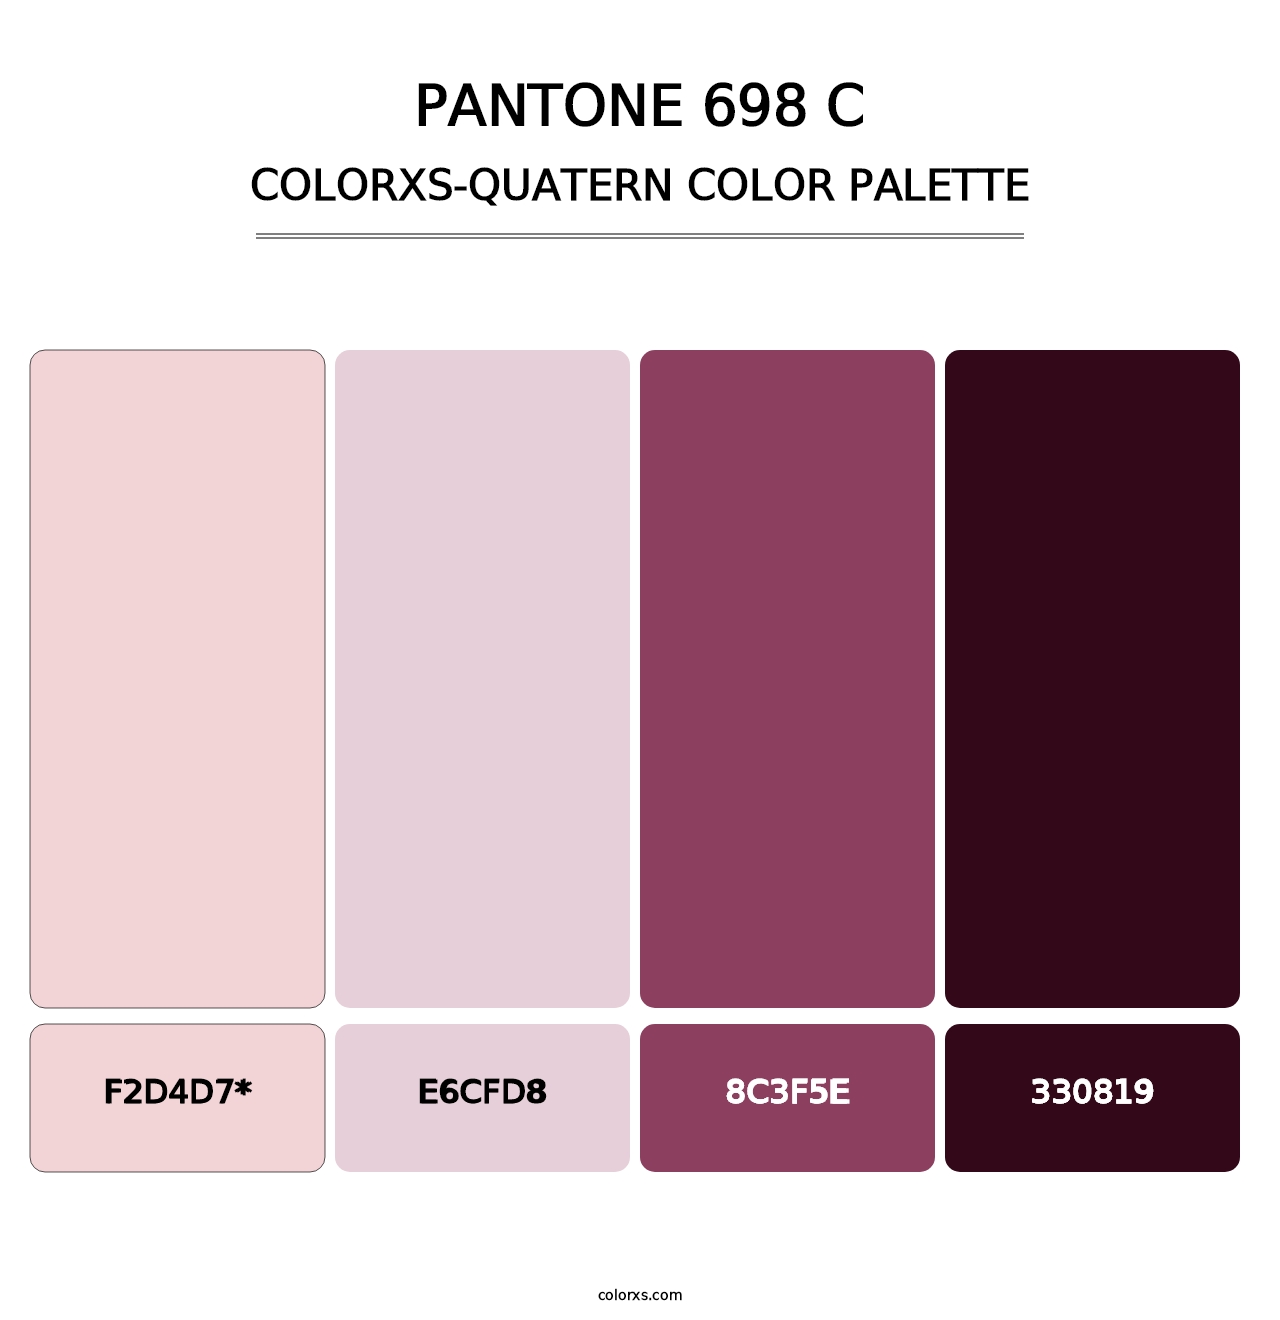 PANTONE 698 C - Colorxs Quatern Palette